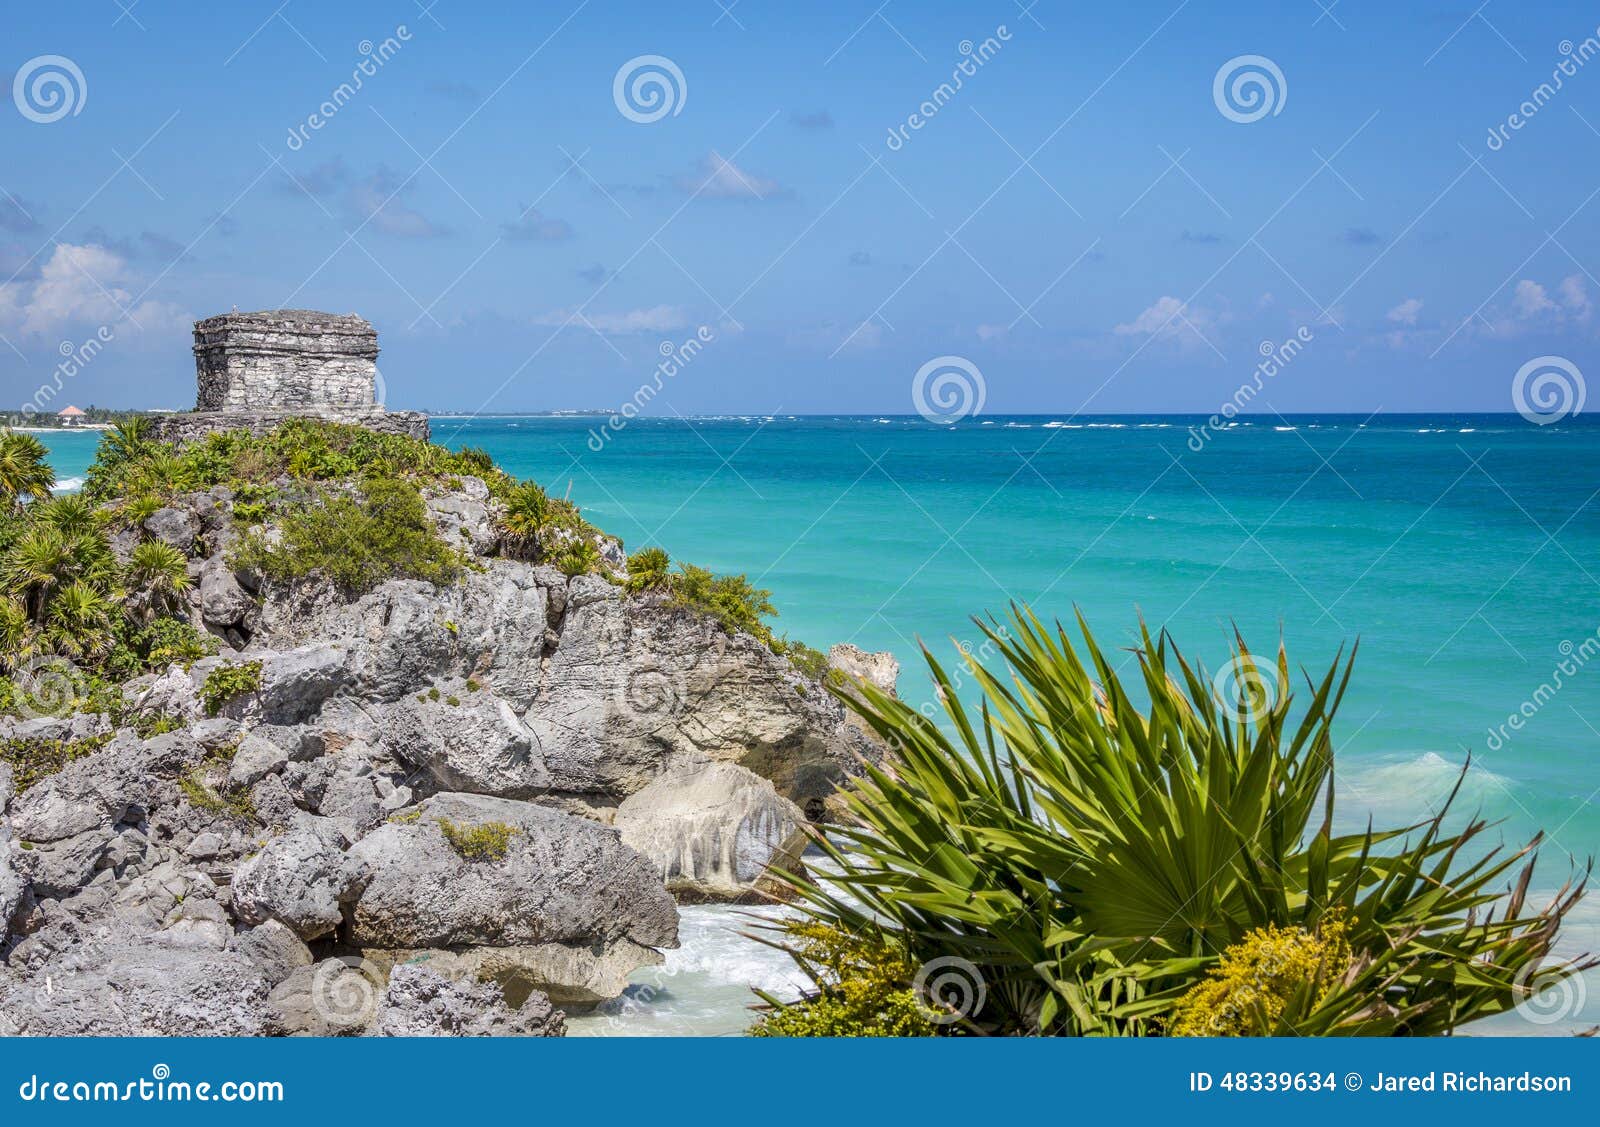 mayan ruin at tulum near playa del carmen, mexico